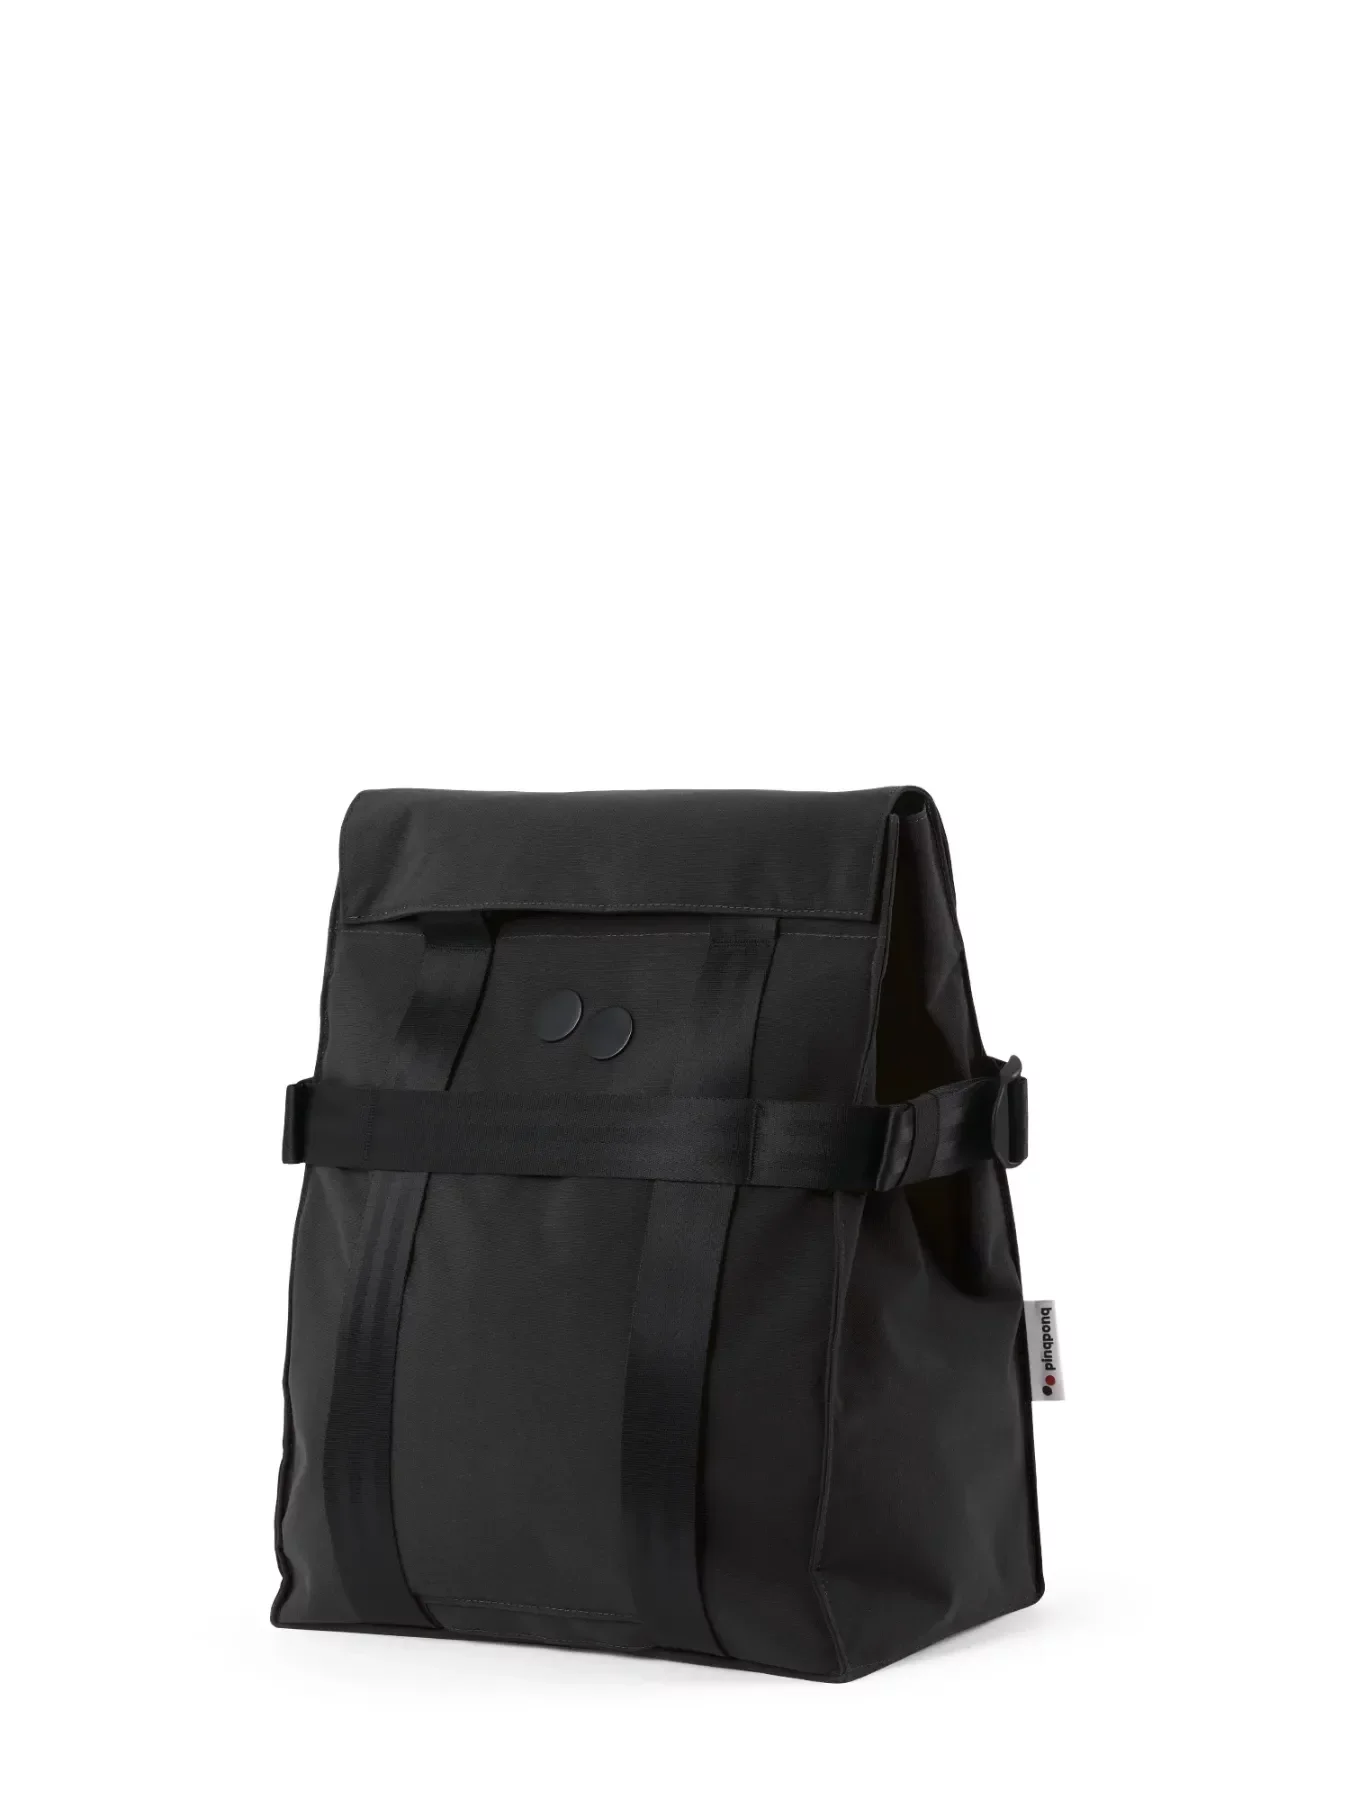 pinqponq Backpack PENDIK TB - Solid Black 3